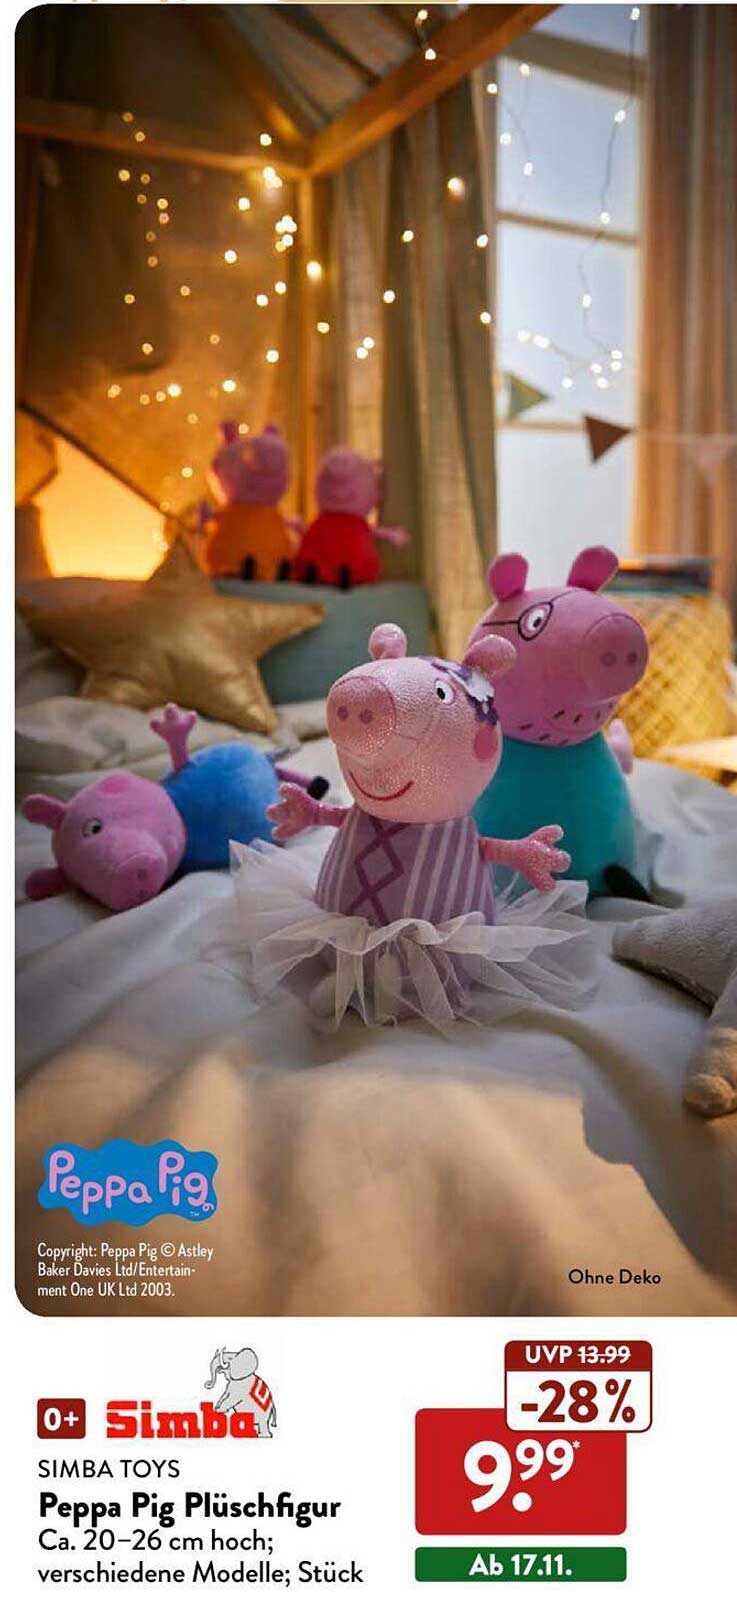 ALDI Nord Simba Toys Peppa Pig Plüschfigur